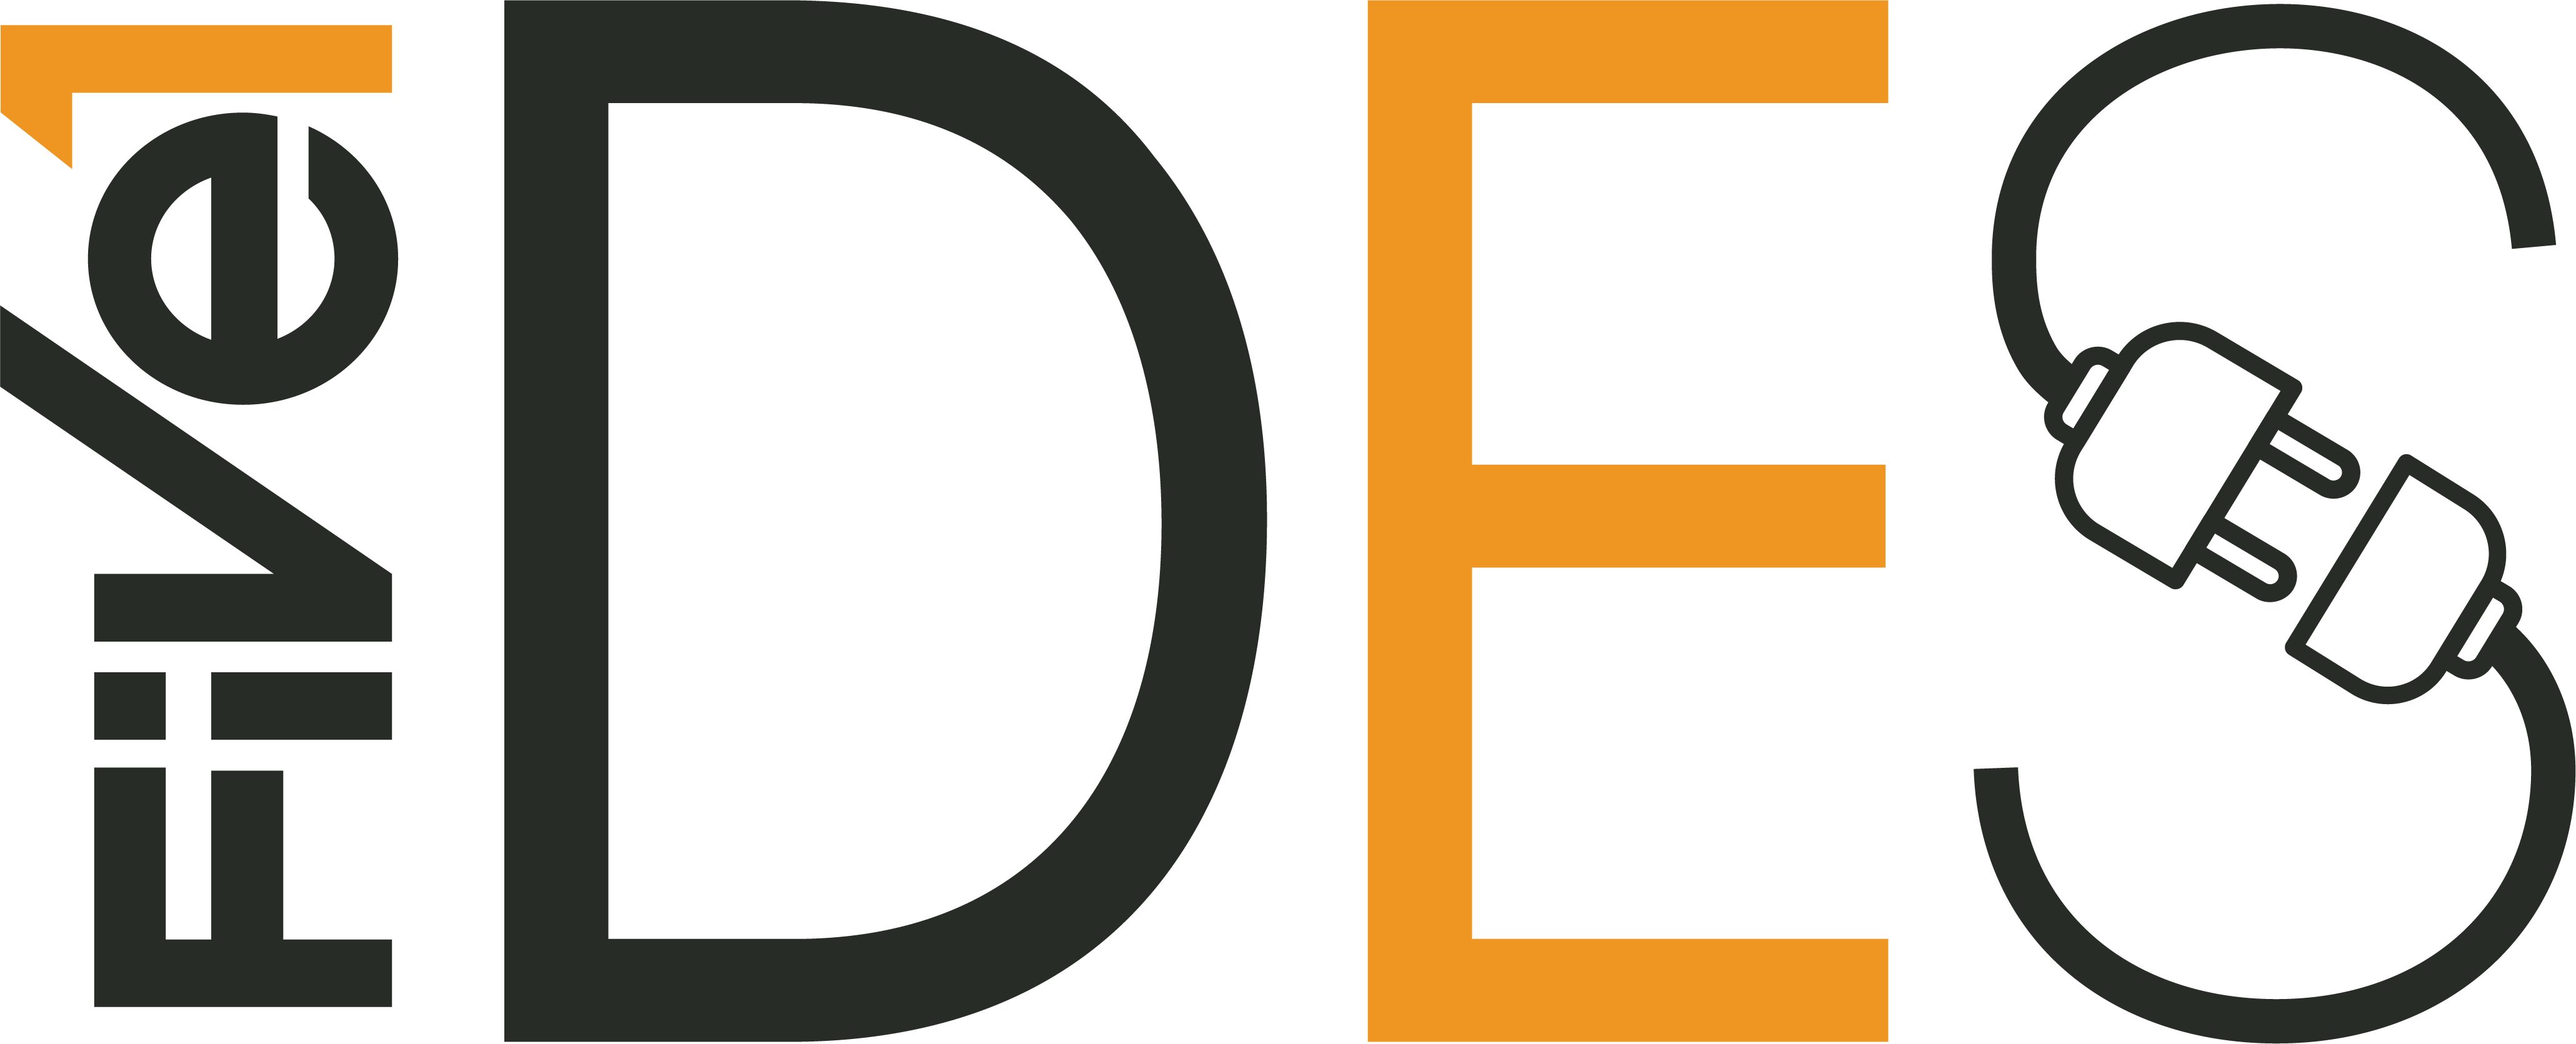 DES Logo